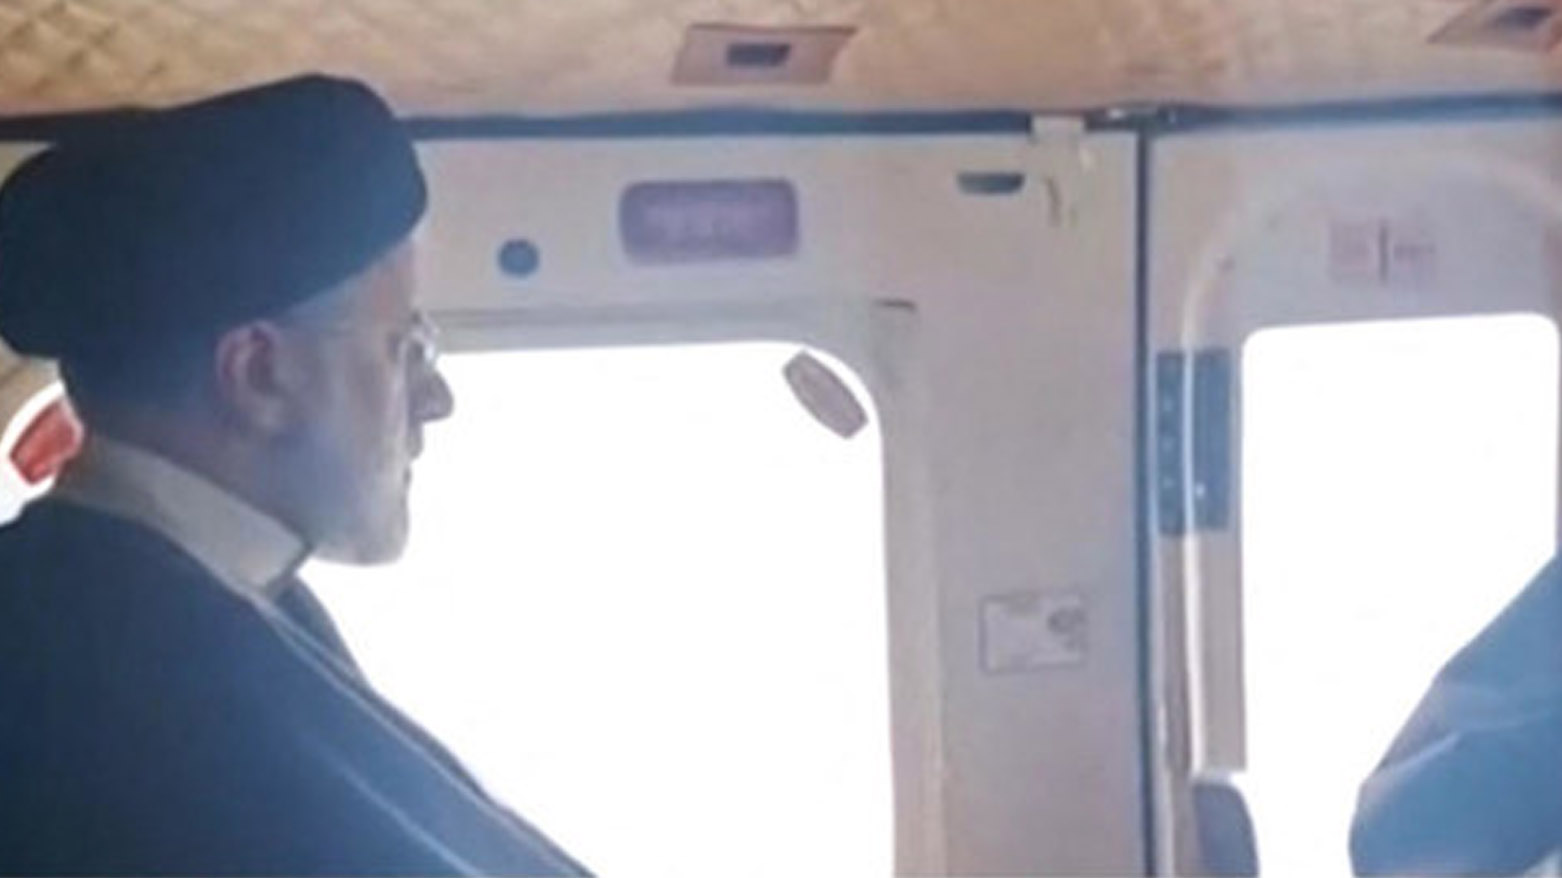 ابراهیم رئیسی، رئیس جمهور ایران در حال سفر با بالگرد - عکس: آرشیو